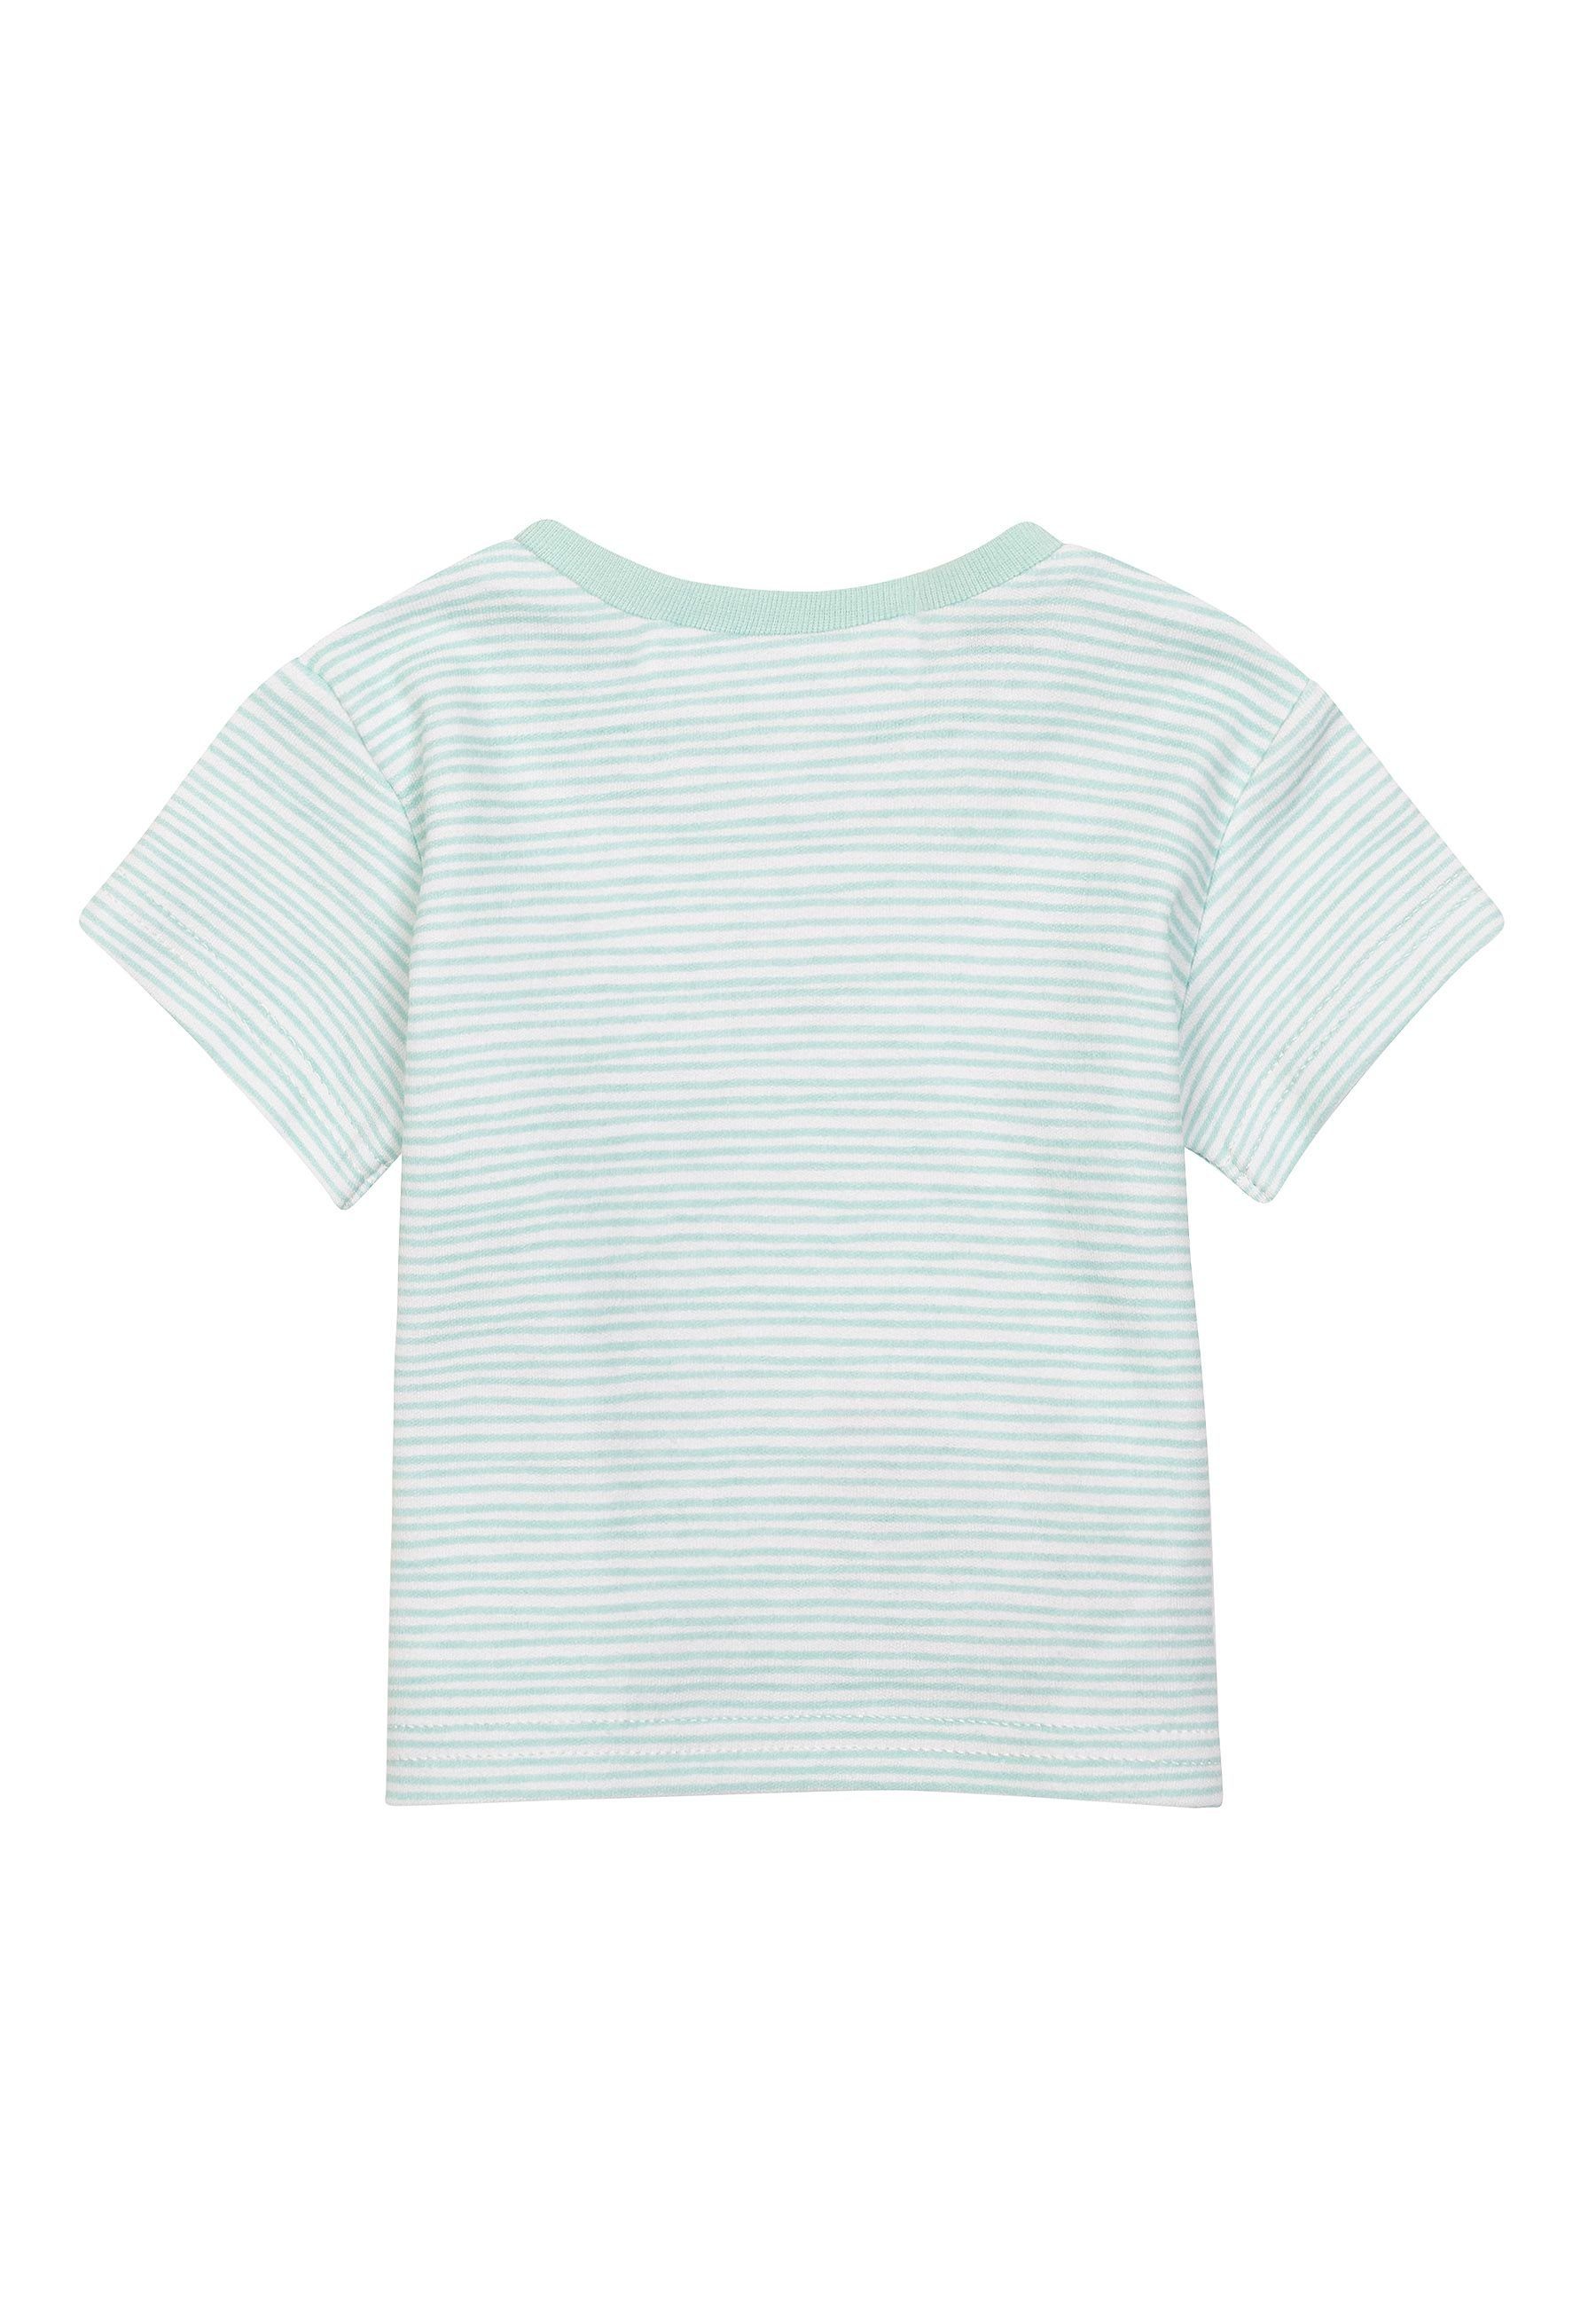 Ein Set Grau Baumwolle (0-12m) T-Shirt MINOTI 3 aus aus T-Shirts